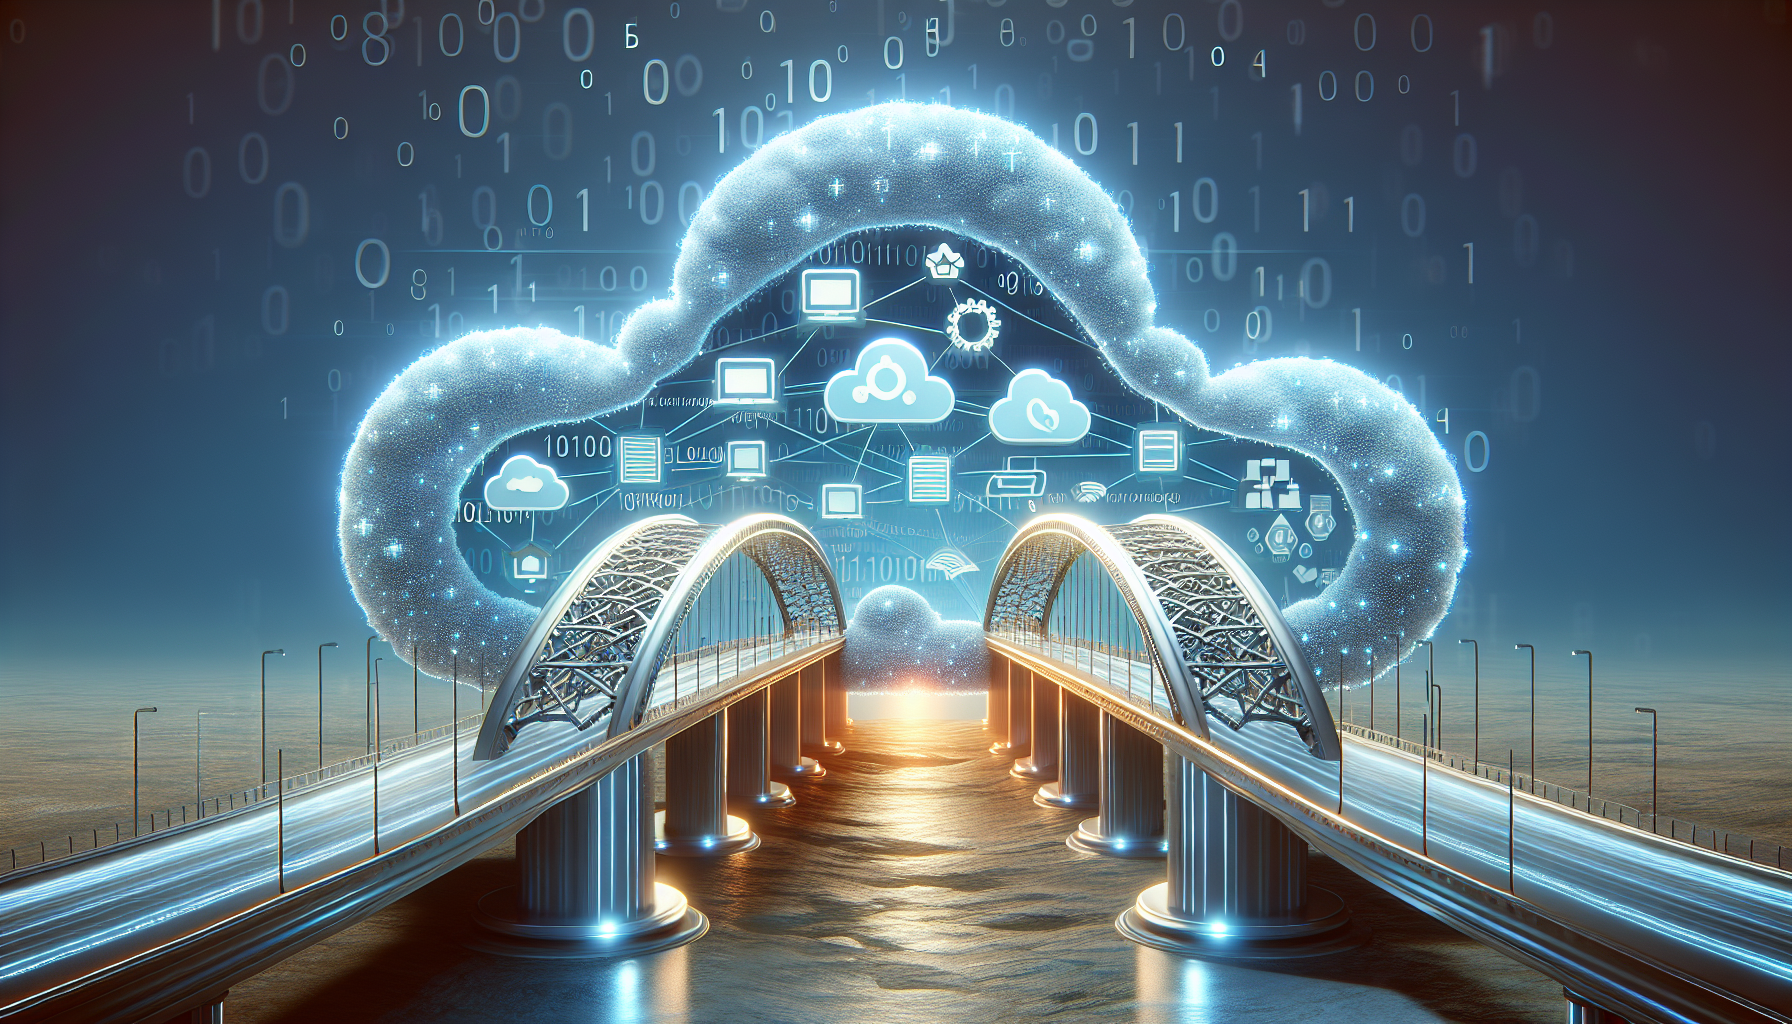 Bridge connecting different cloud environments symbolizing multi-cloud deployments.